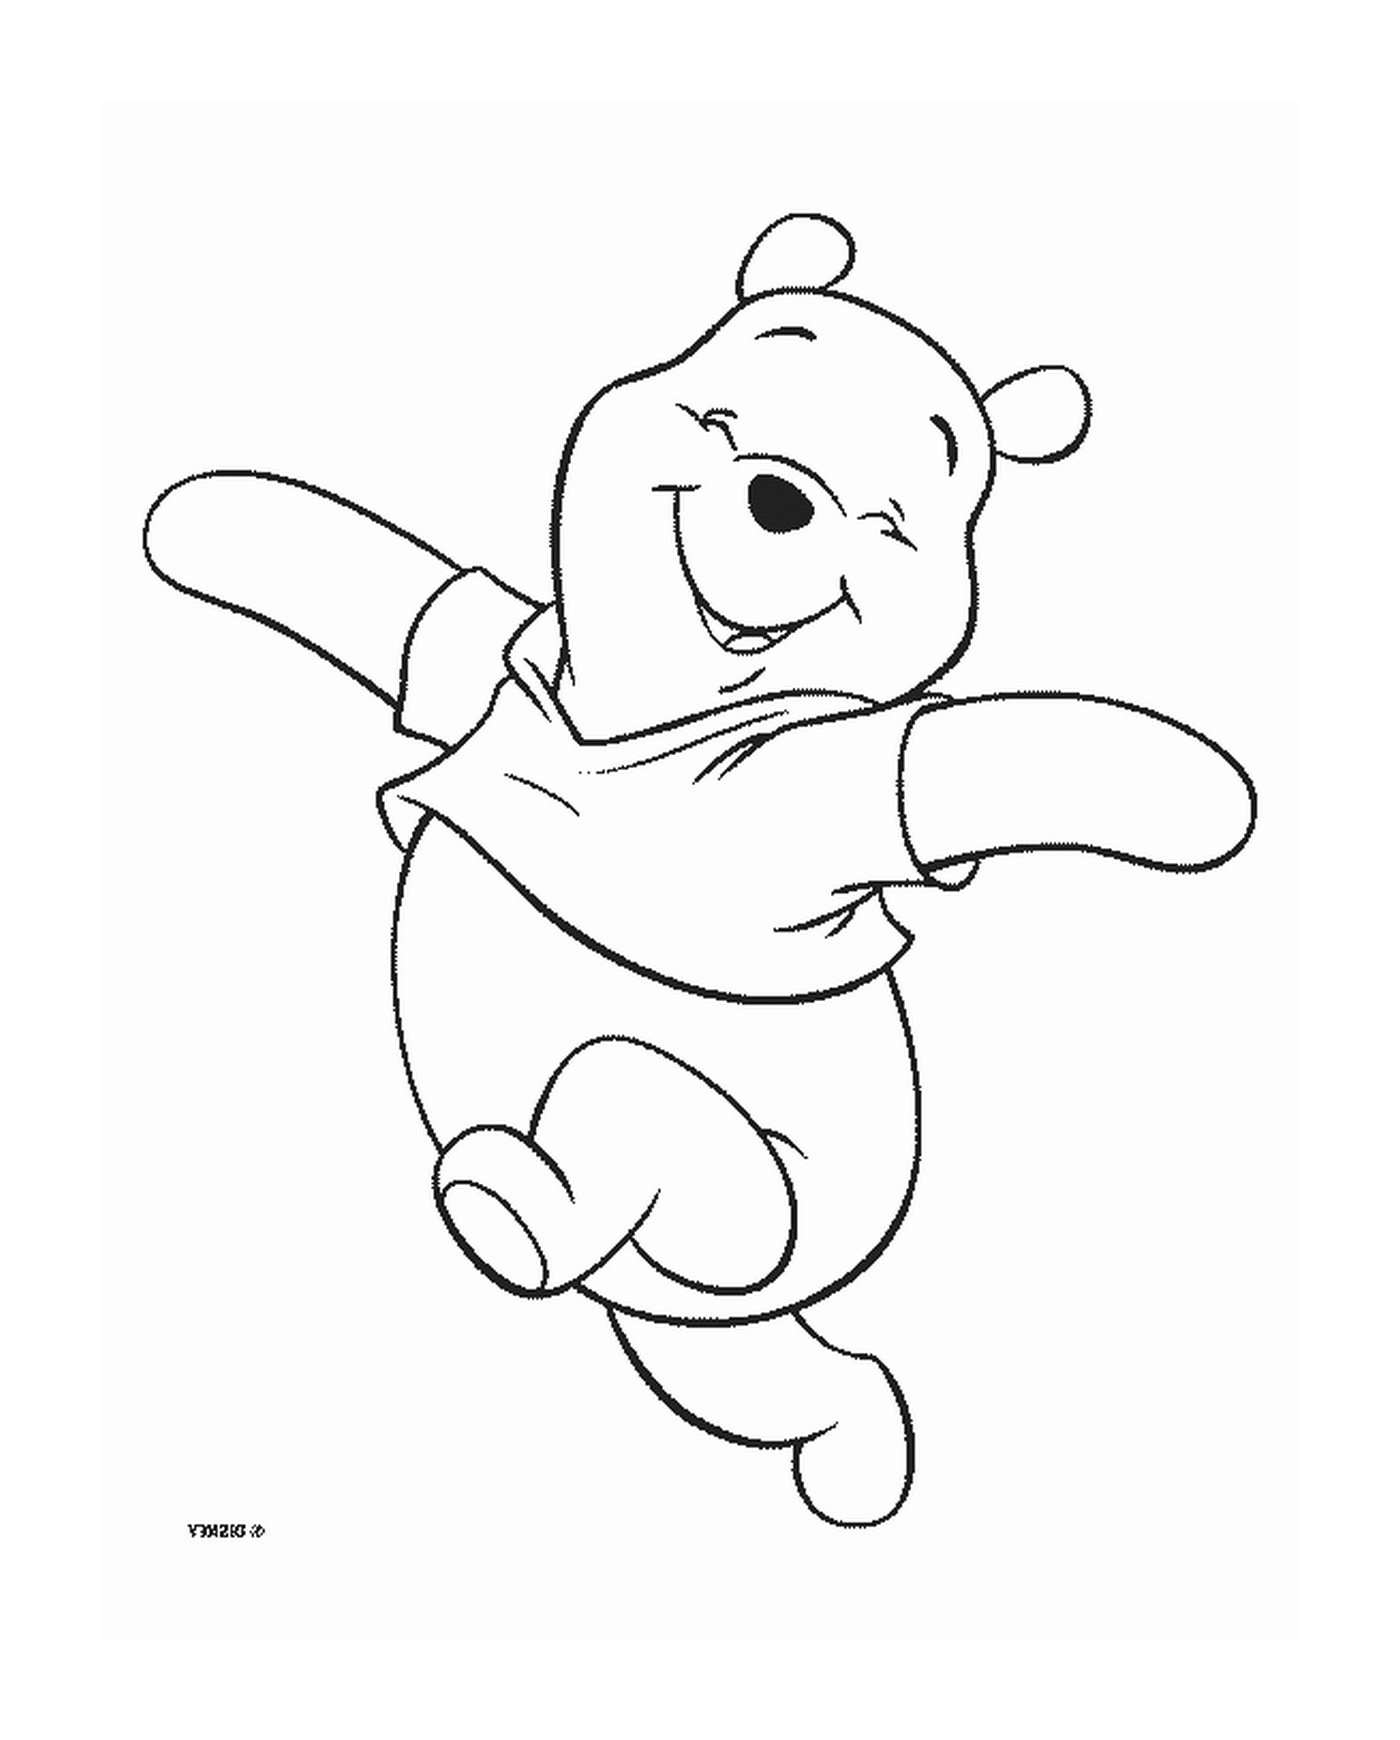  Winnie el oso camina con alegría 